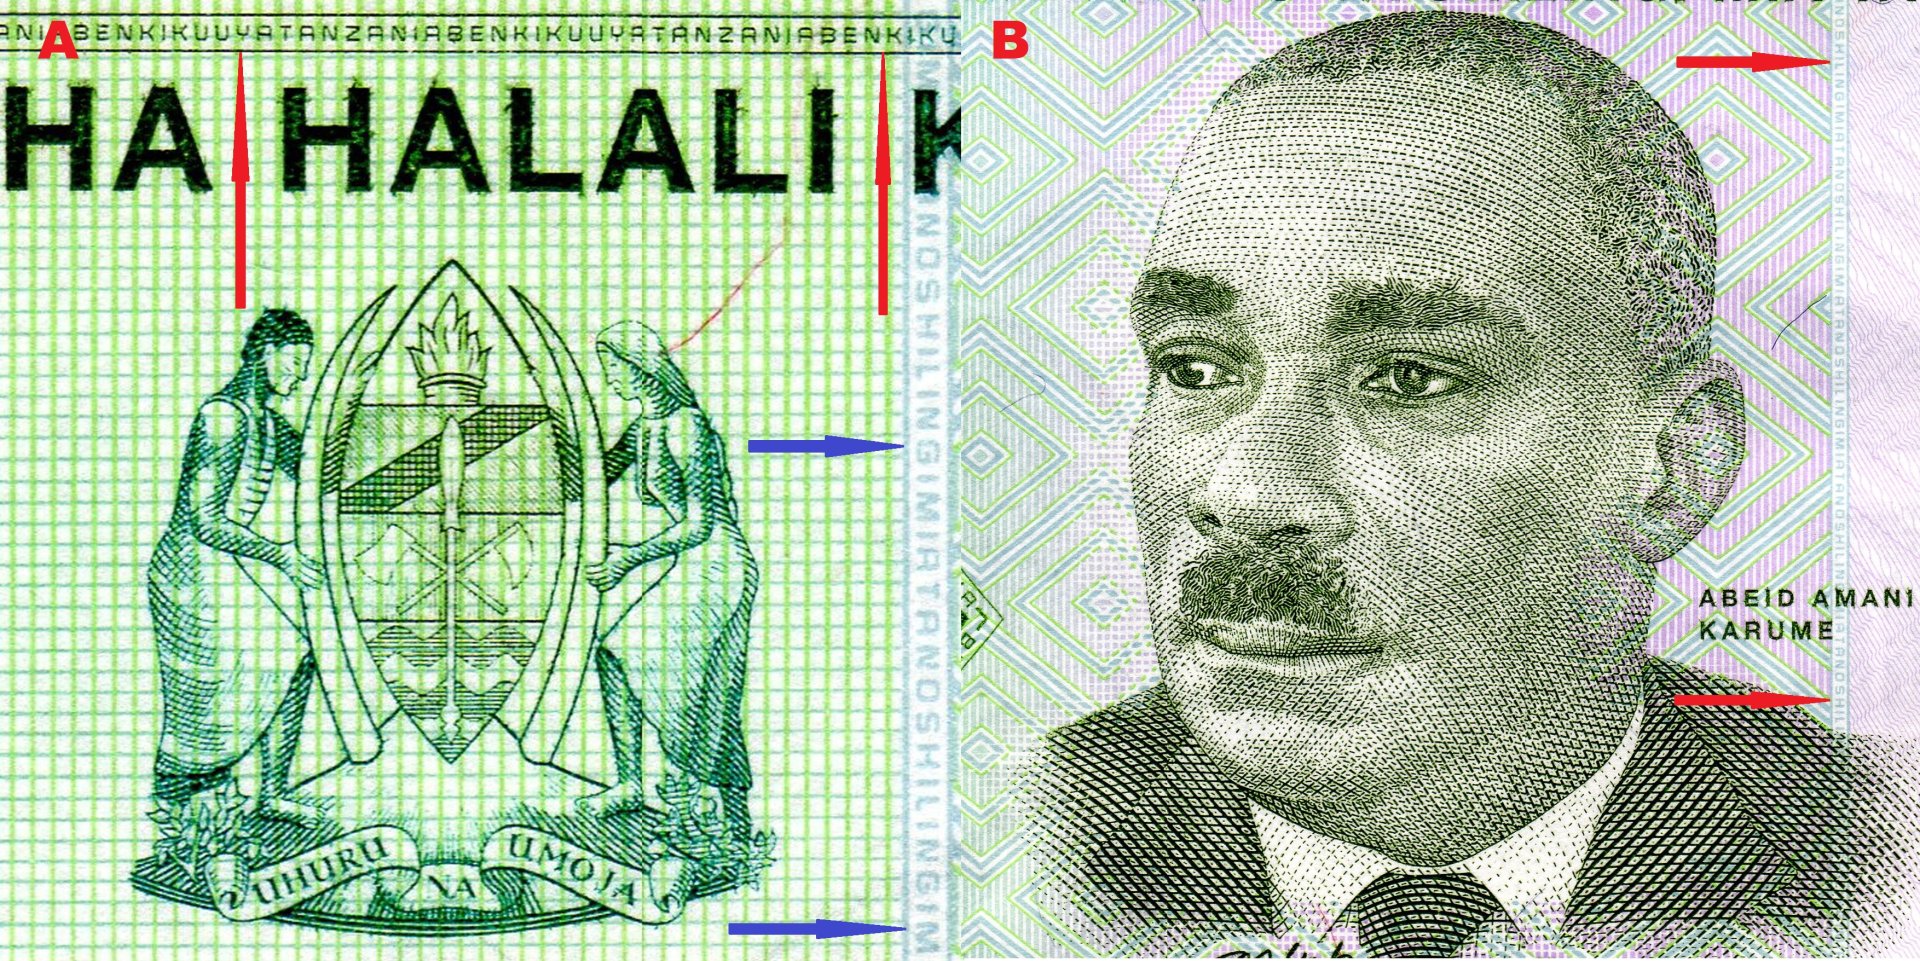 Obr. 1. A) Státní znak Tanzanie, šipky směřují k horizontálnímu a vertikálnímu řádku pozitivního mikropísma. B) Portrét prvního prezidenta Zanzibaru - Abeid Amani Karume.